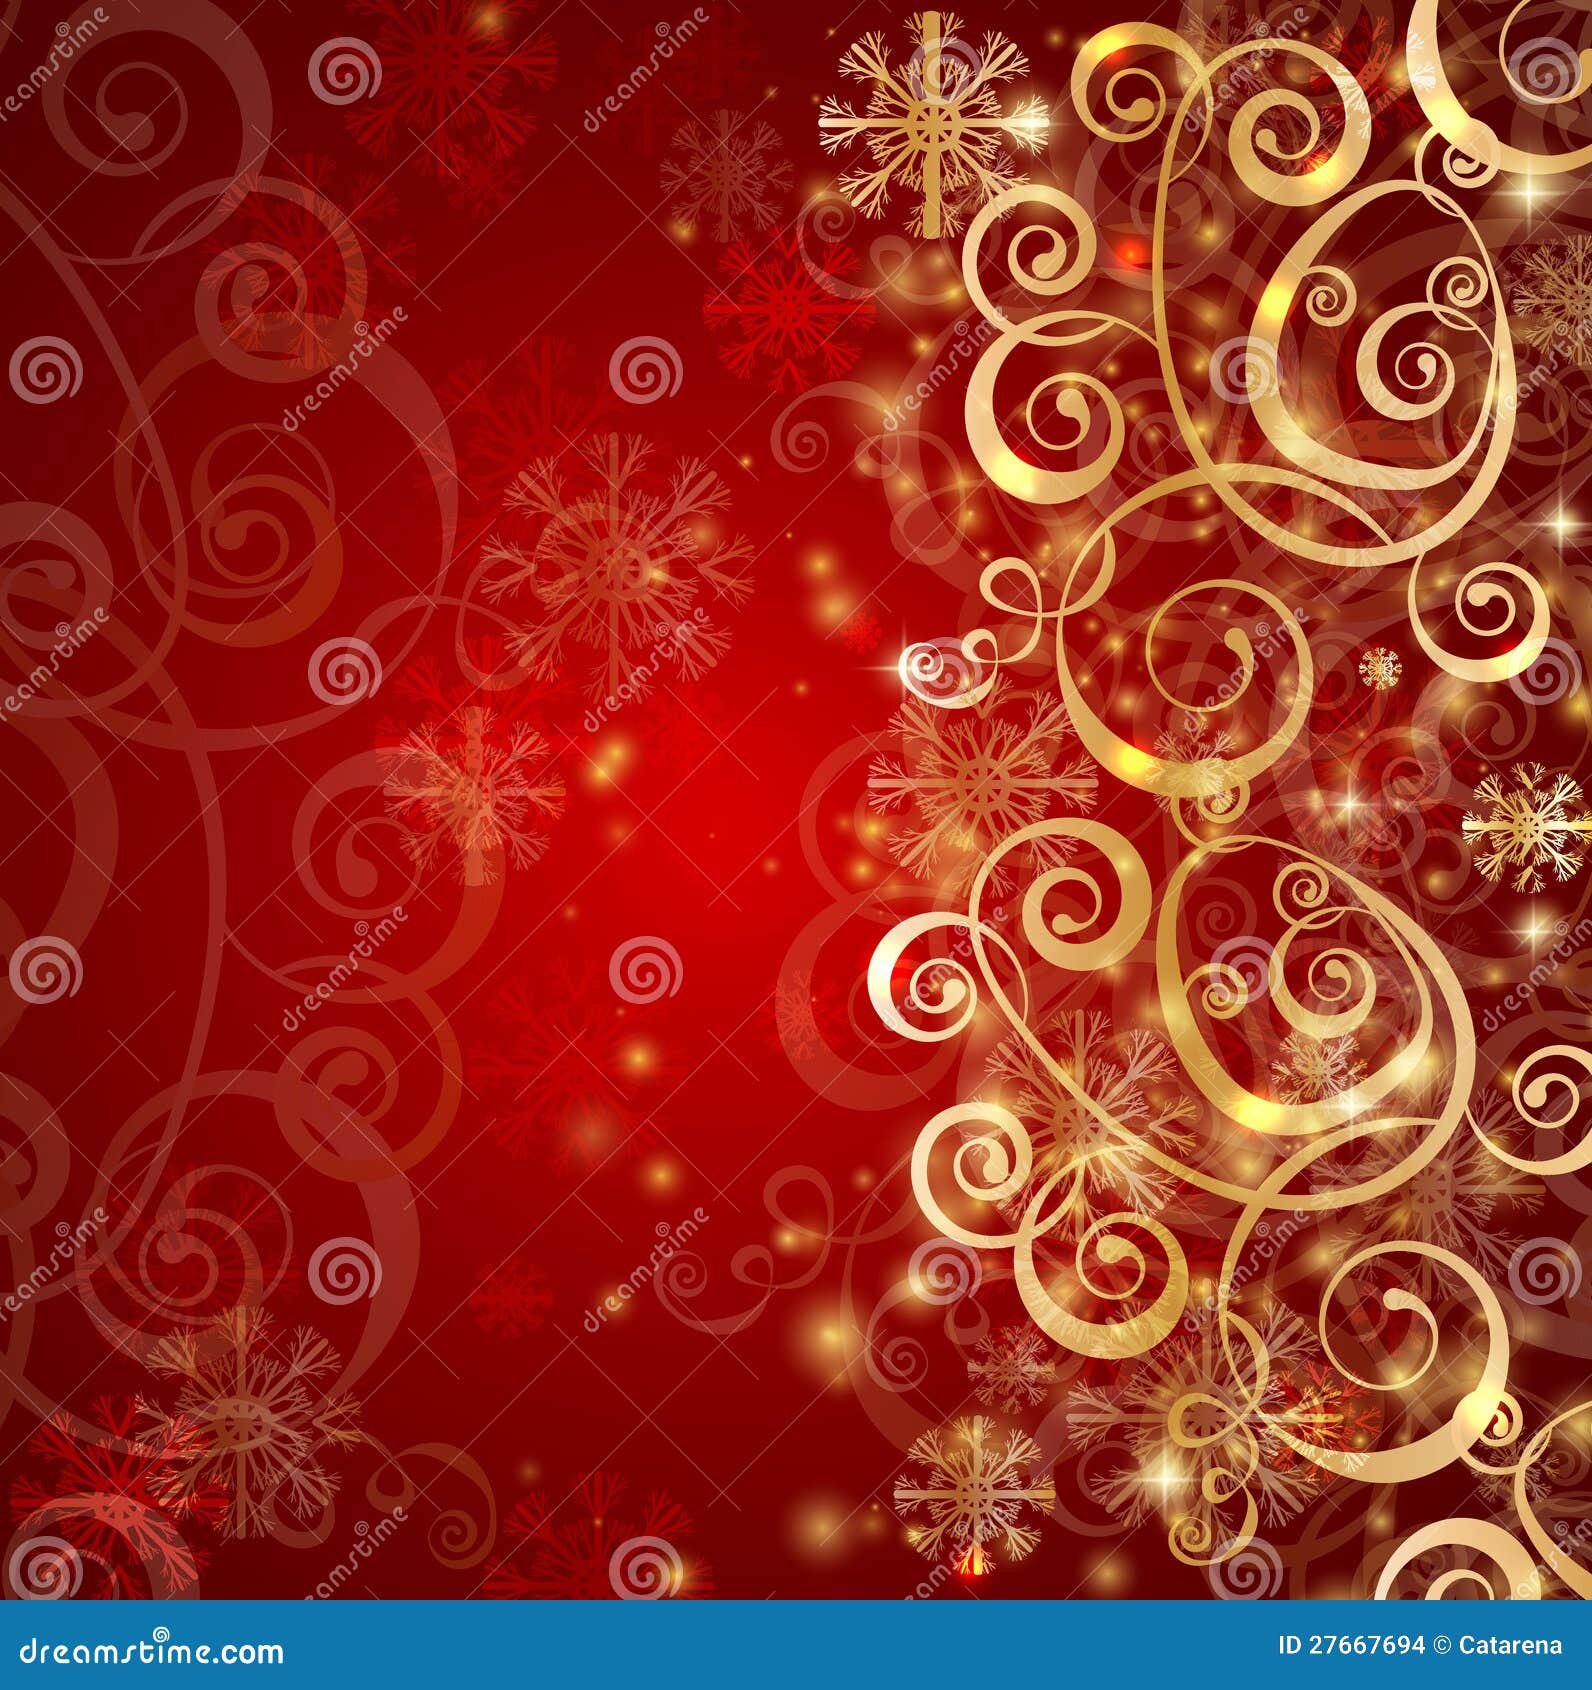 Elegante Fondo De Navidad Con Bolas De Oro Por La Noche Ilustración de  stock  Getty Images